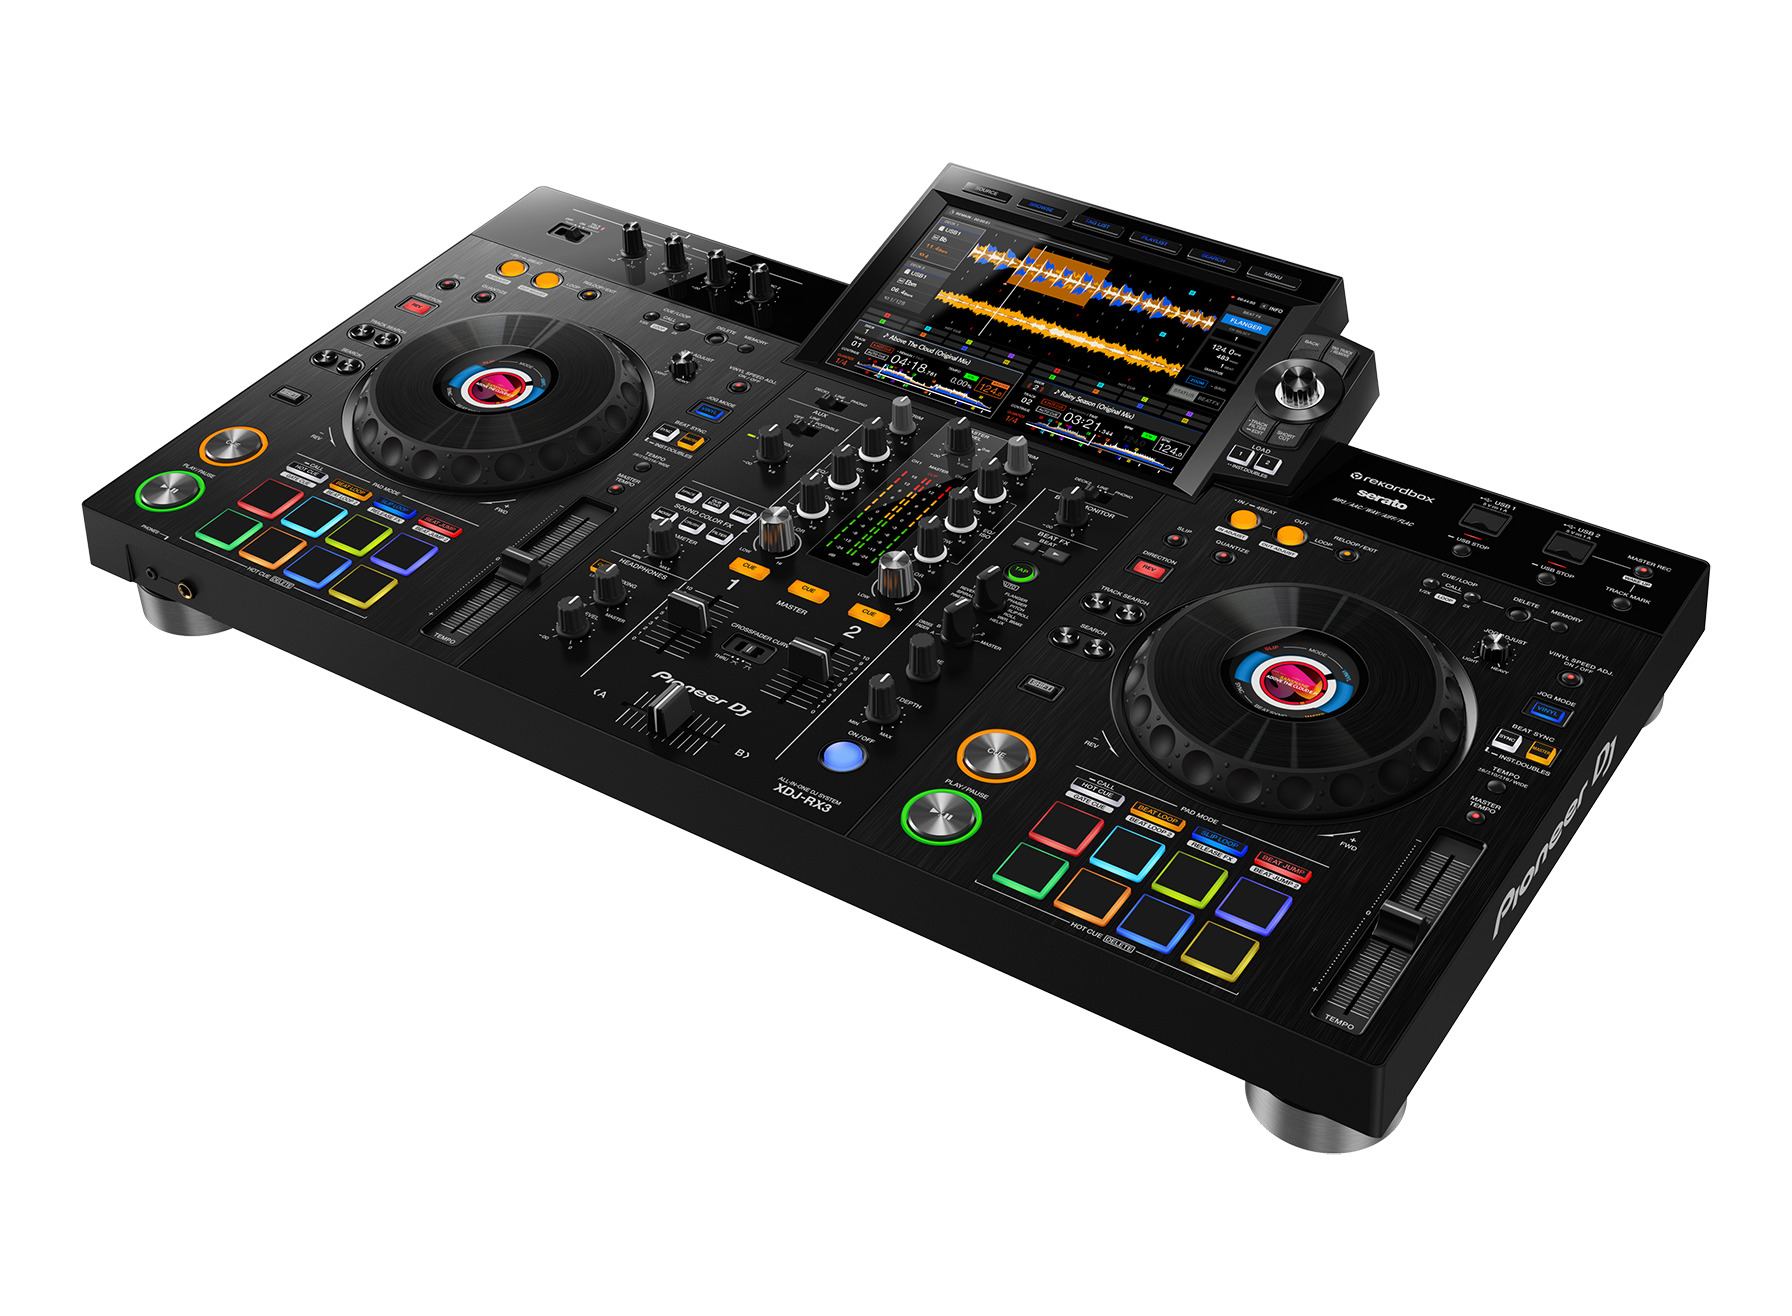 【新商品】Pioneer DJ XDJ-RX3 | 10.1インチのタッチディスプレイを搭載したオールインワンDJシステム